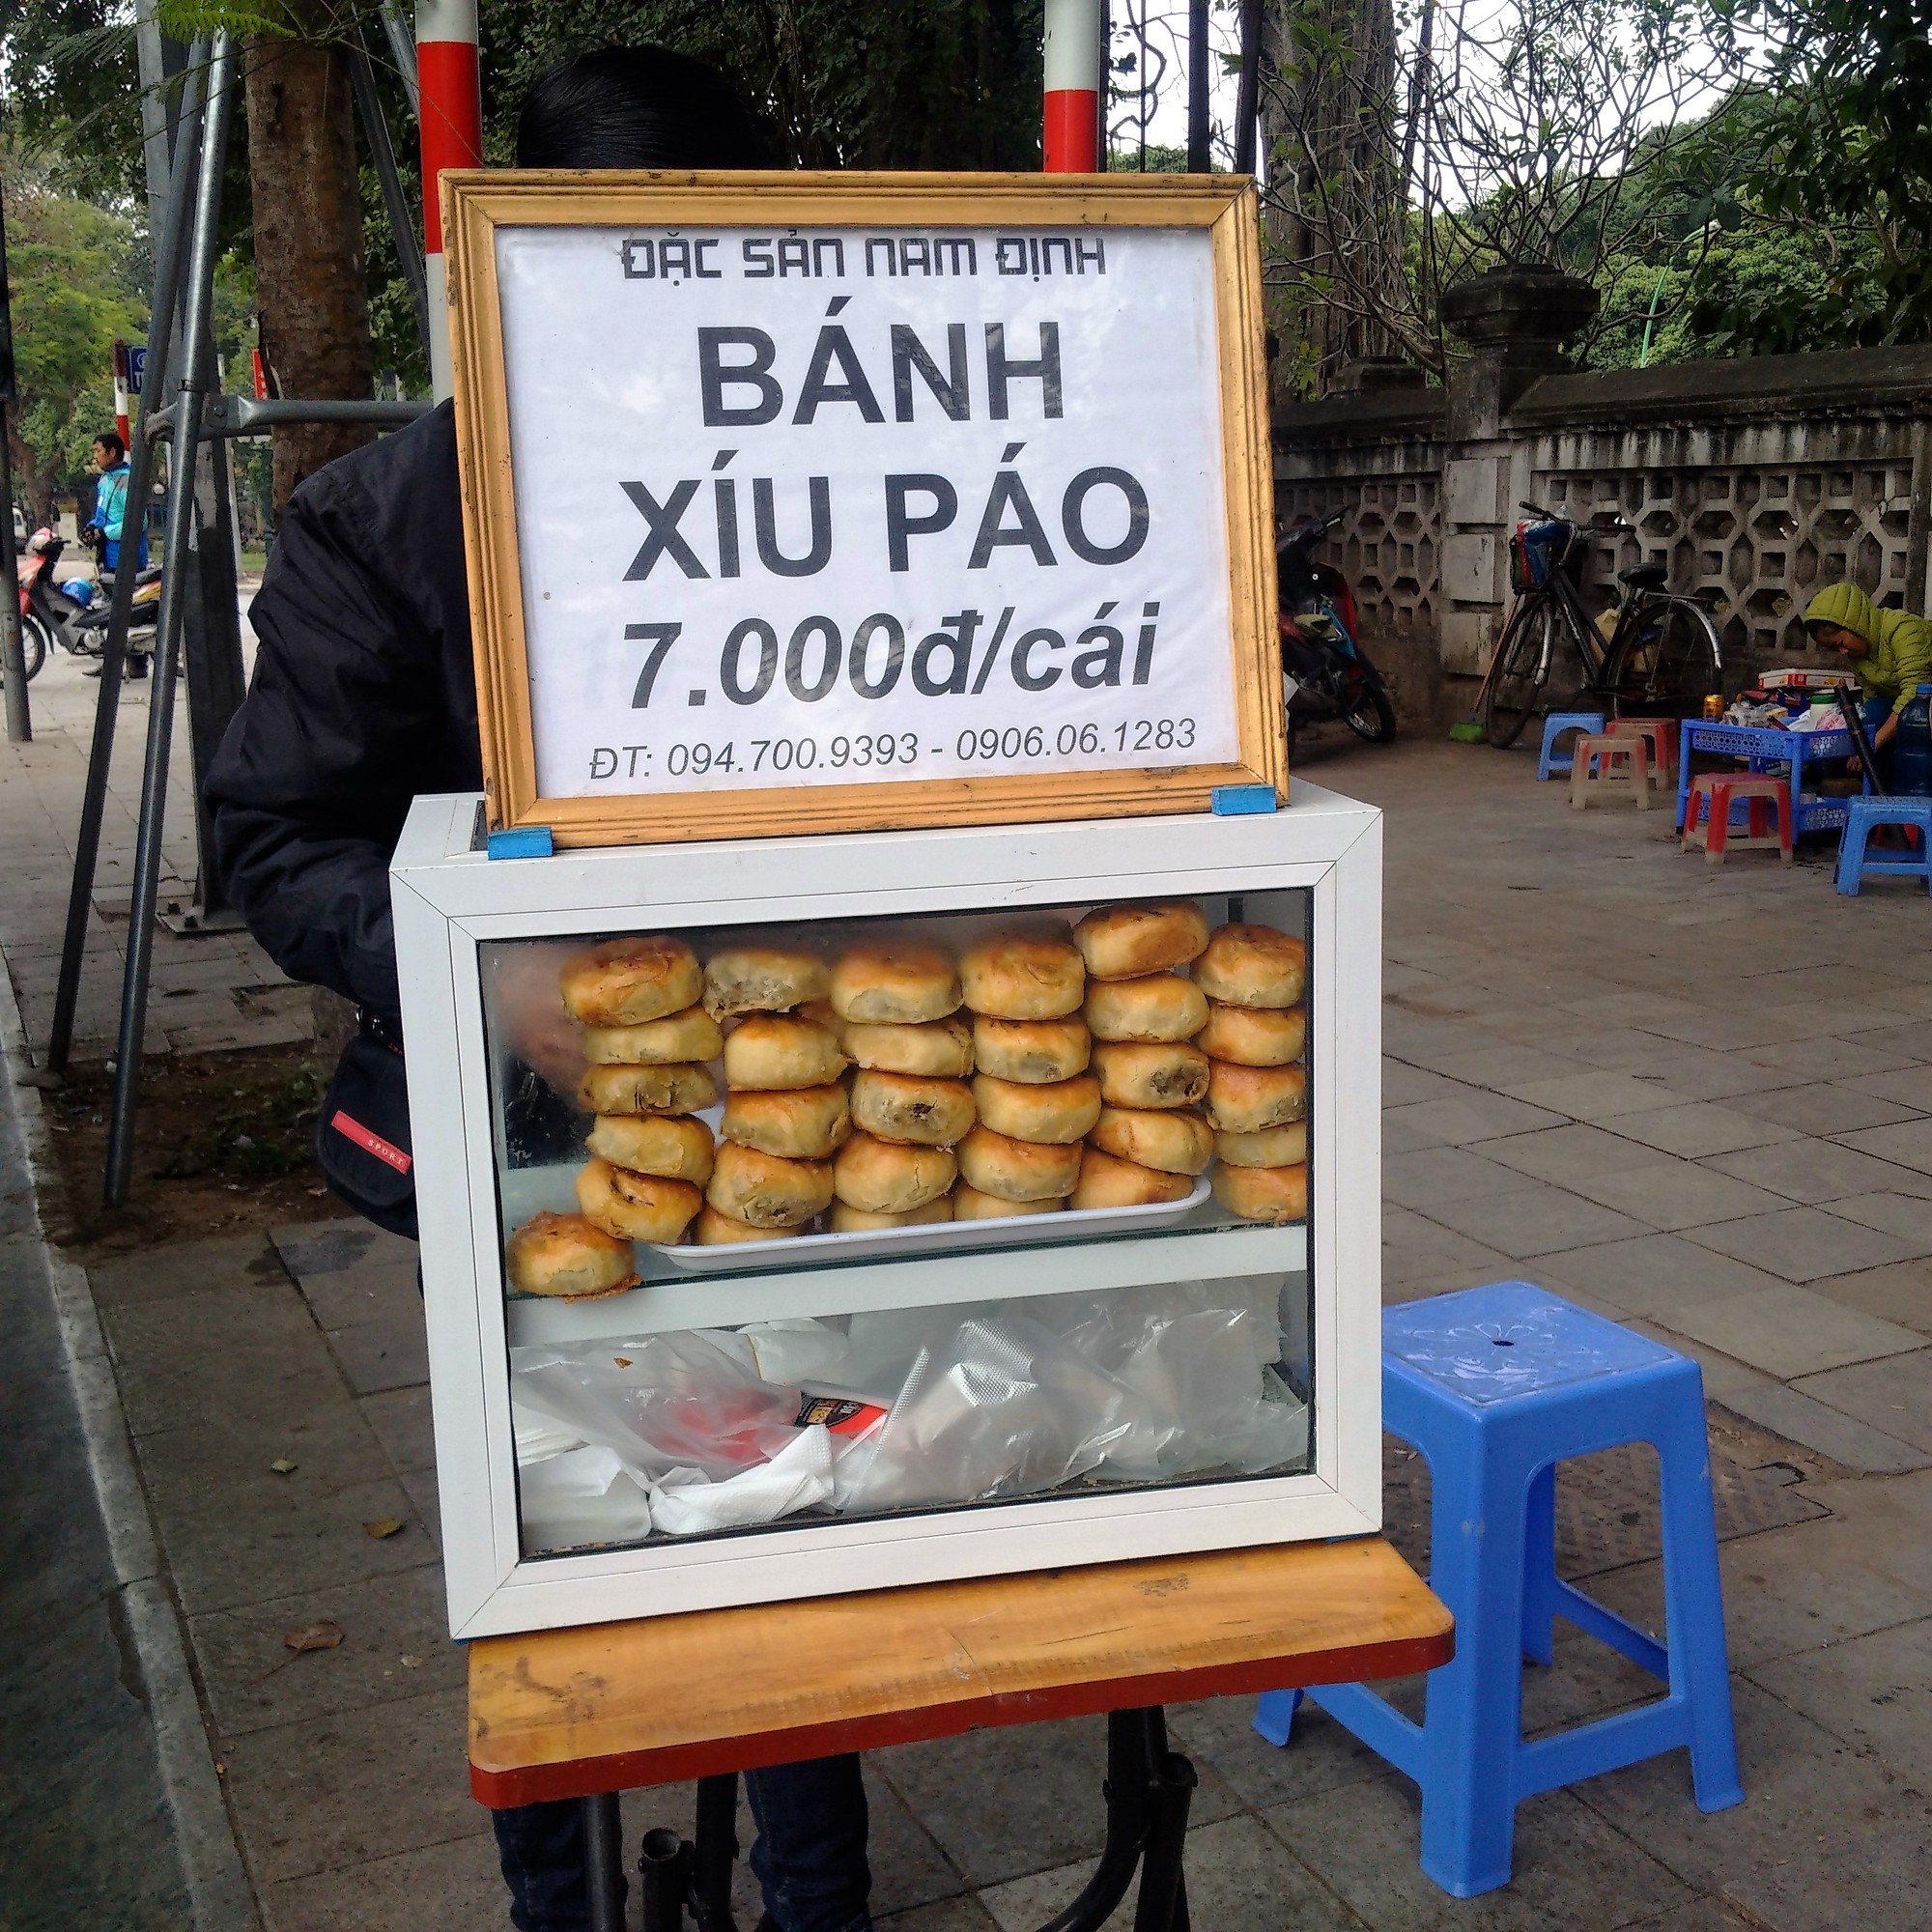 Ký ức Hà Nội: Hương vị khó quên của món bánh xíu páo ở Thủ đô - Ảnh 1.